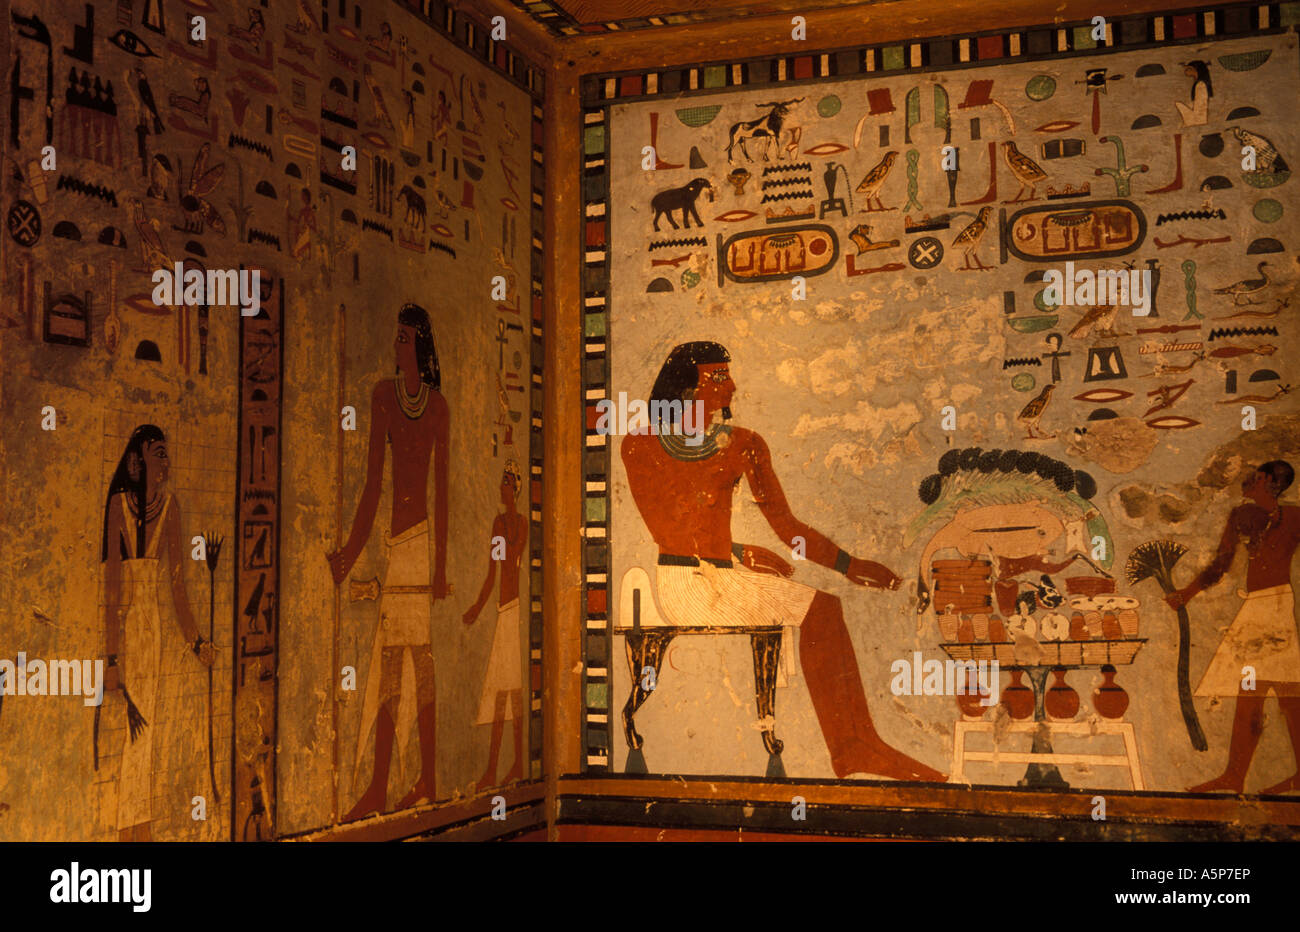 Pittura murale nella tomba di Sirenput II, le tombe dei nobili, Aswan, Egitto Foto Stock